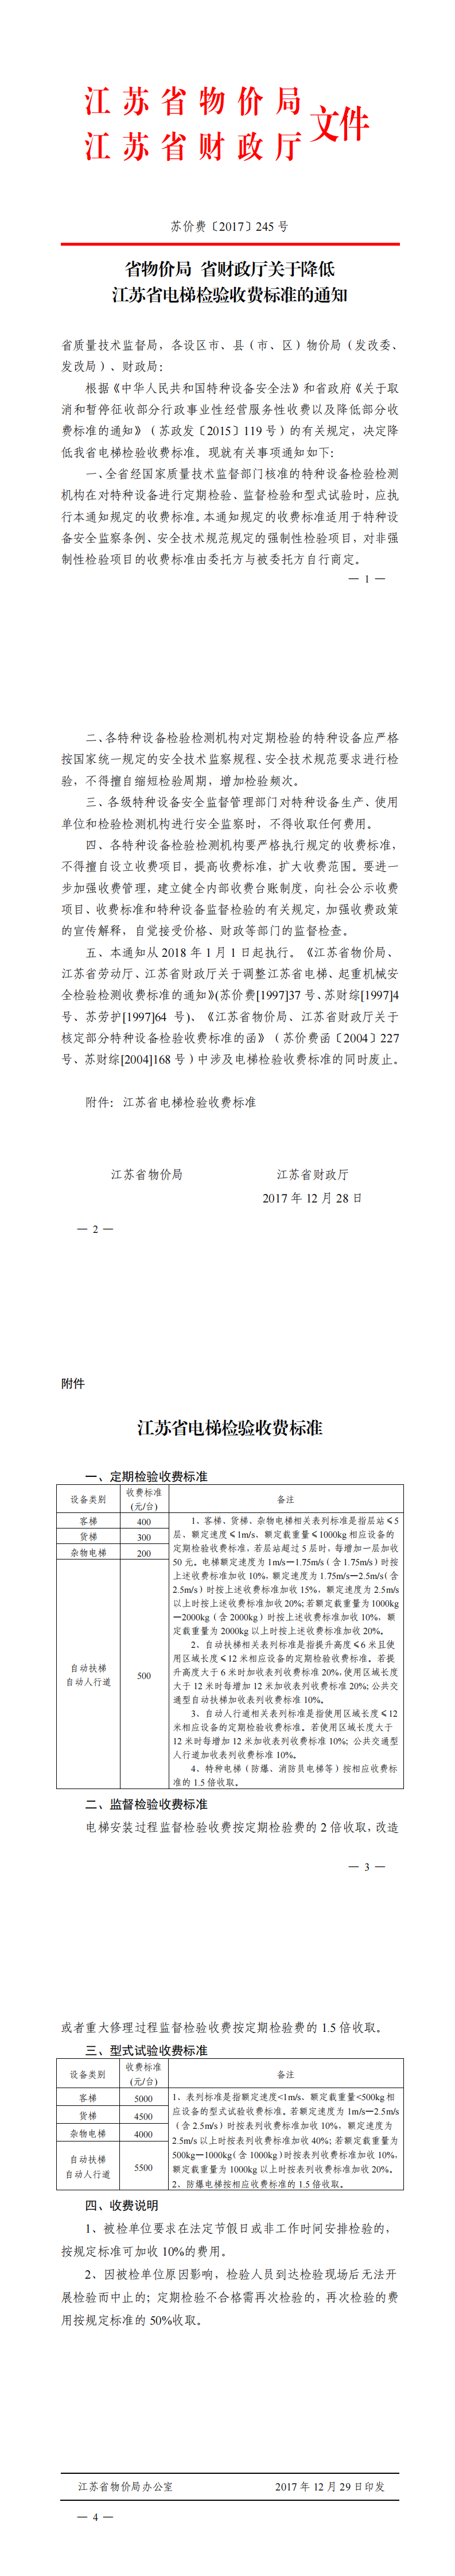 苏价费〔2017〕245号关于降低江苏省电梯检验收费标准的通知_0.png